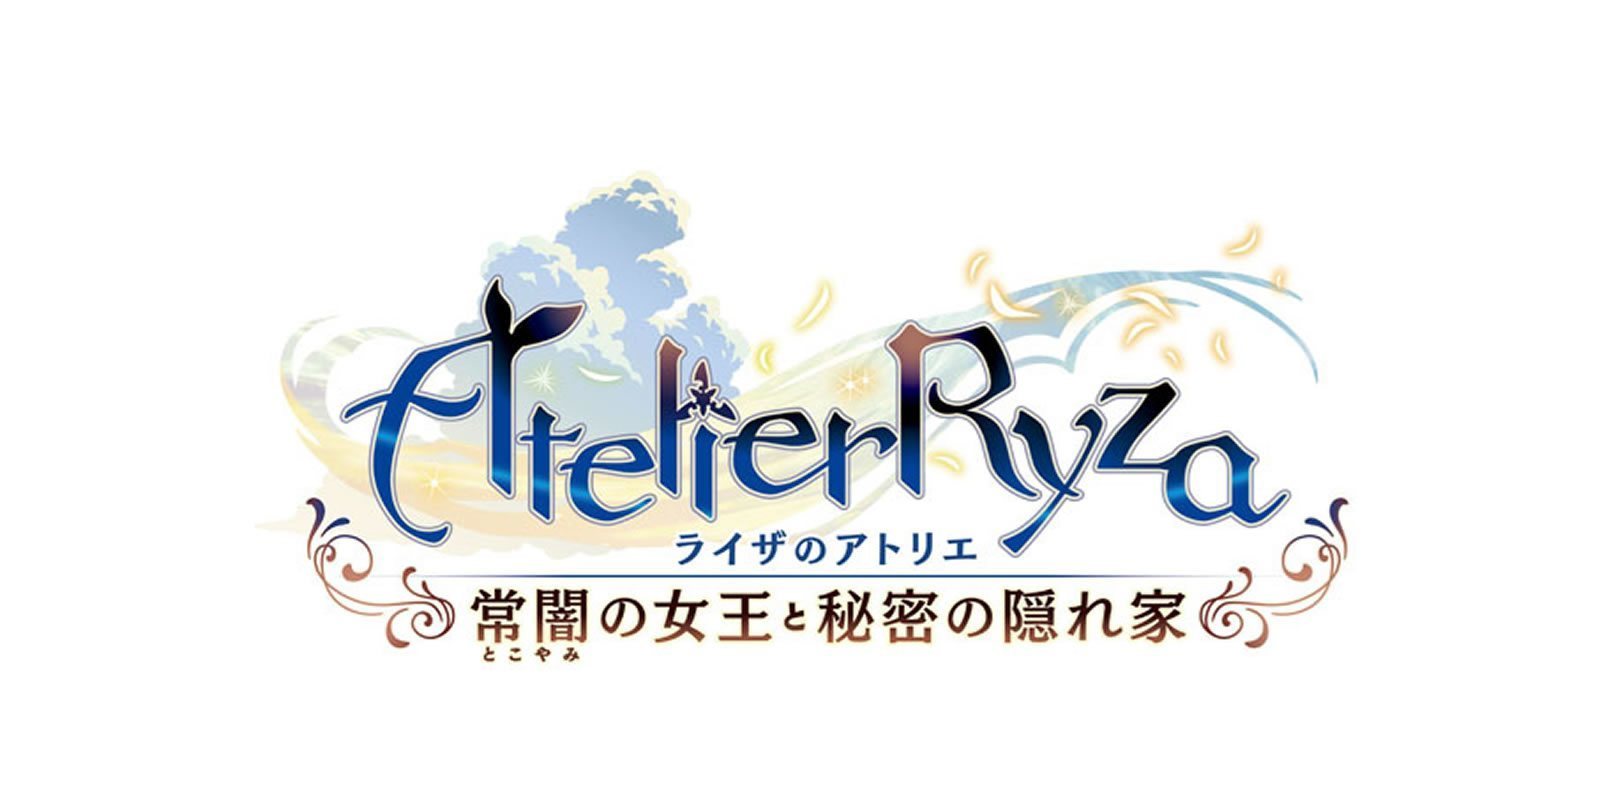 'Atelier Ryza' se lanzará para PC, PlayStation 4 y Nintendo Switch